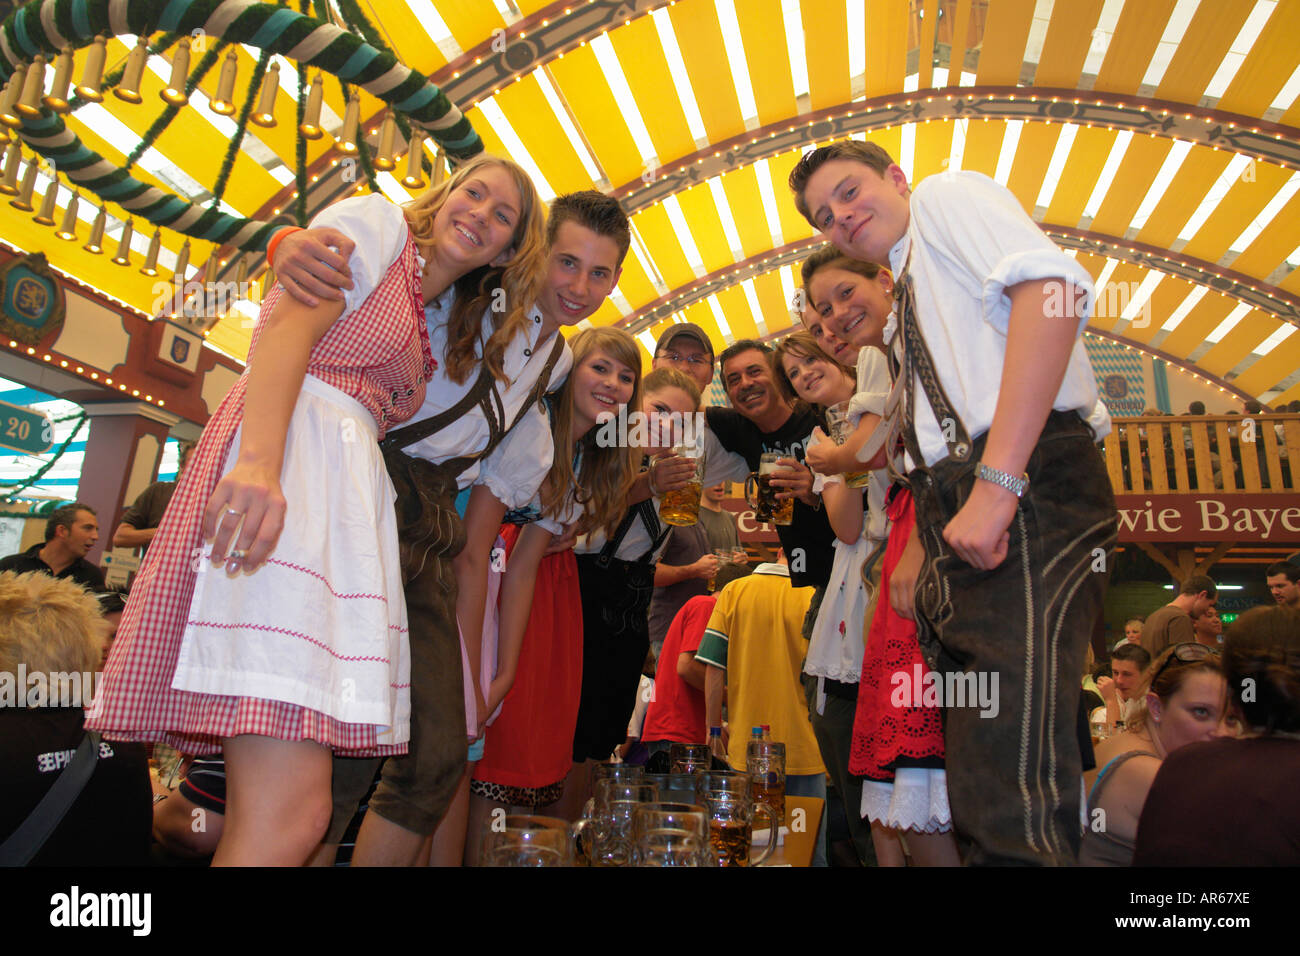 Europa Germania Monaco di Baviera - Festa della birra Oktoberfest la gente ballare e bere in tenda hall e feste. Foto Stock